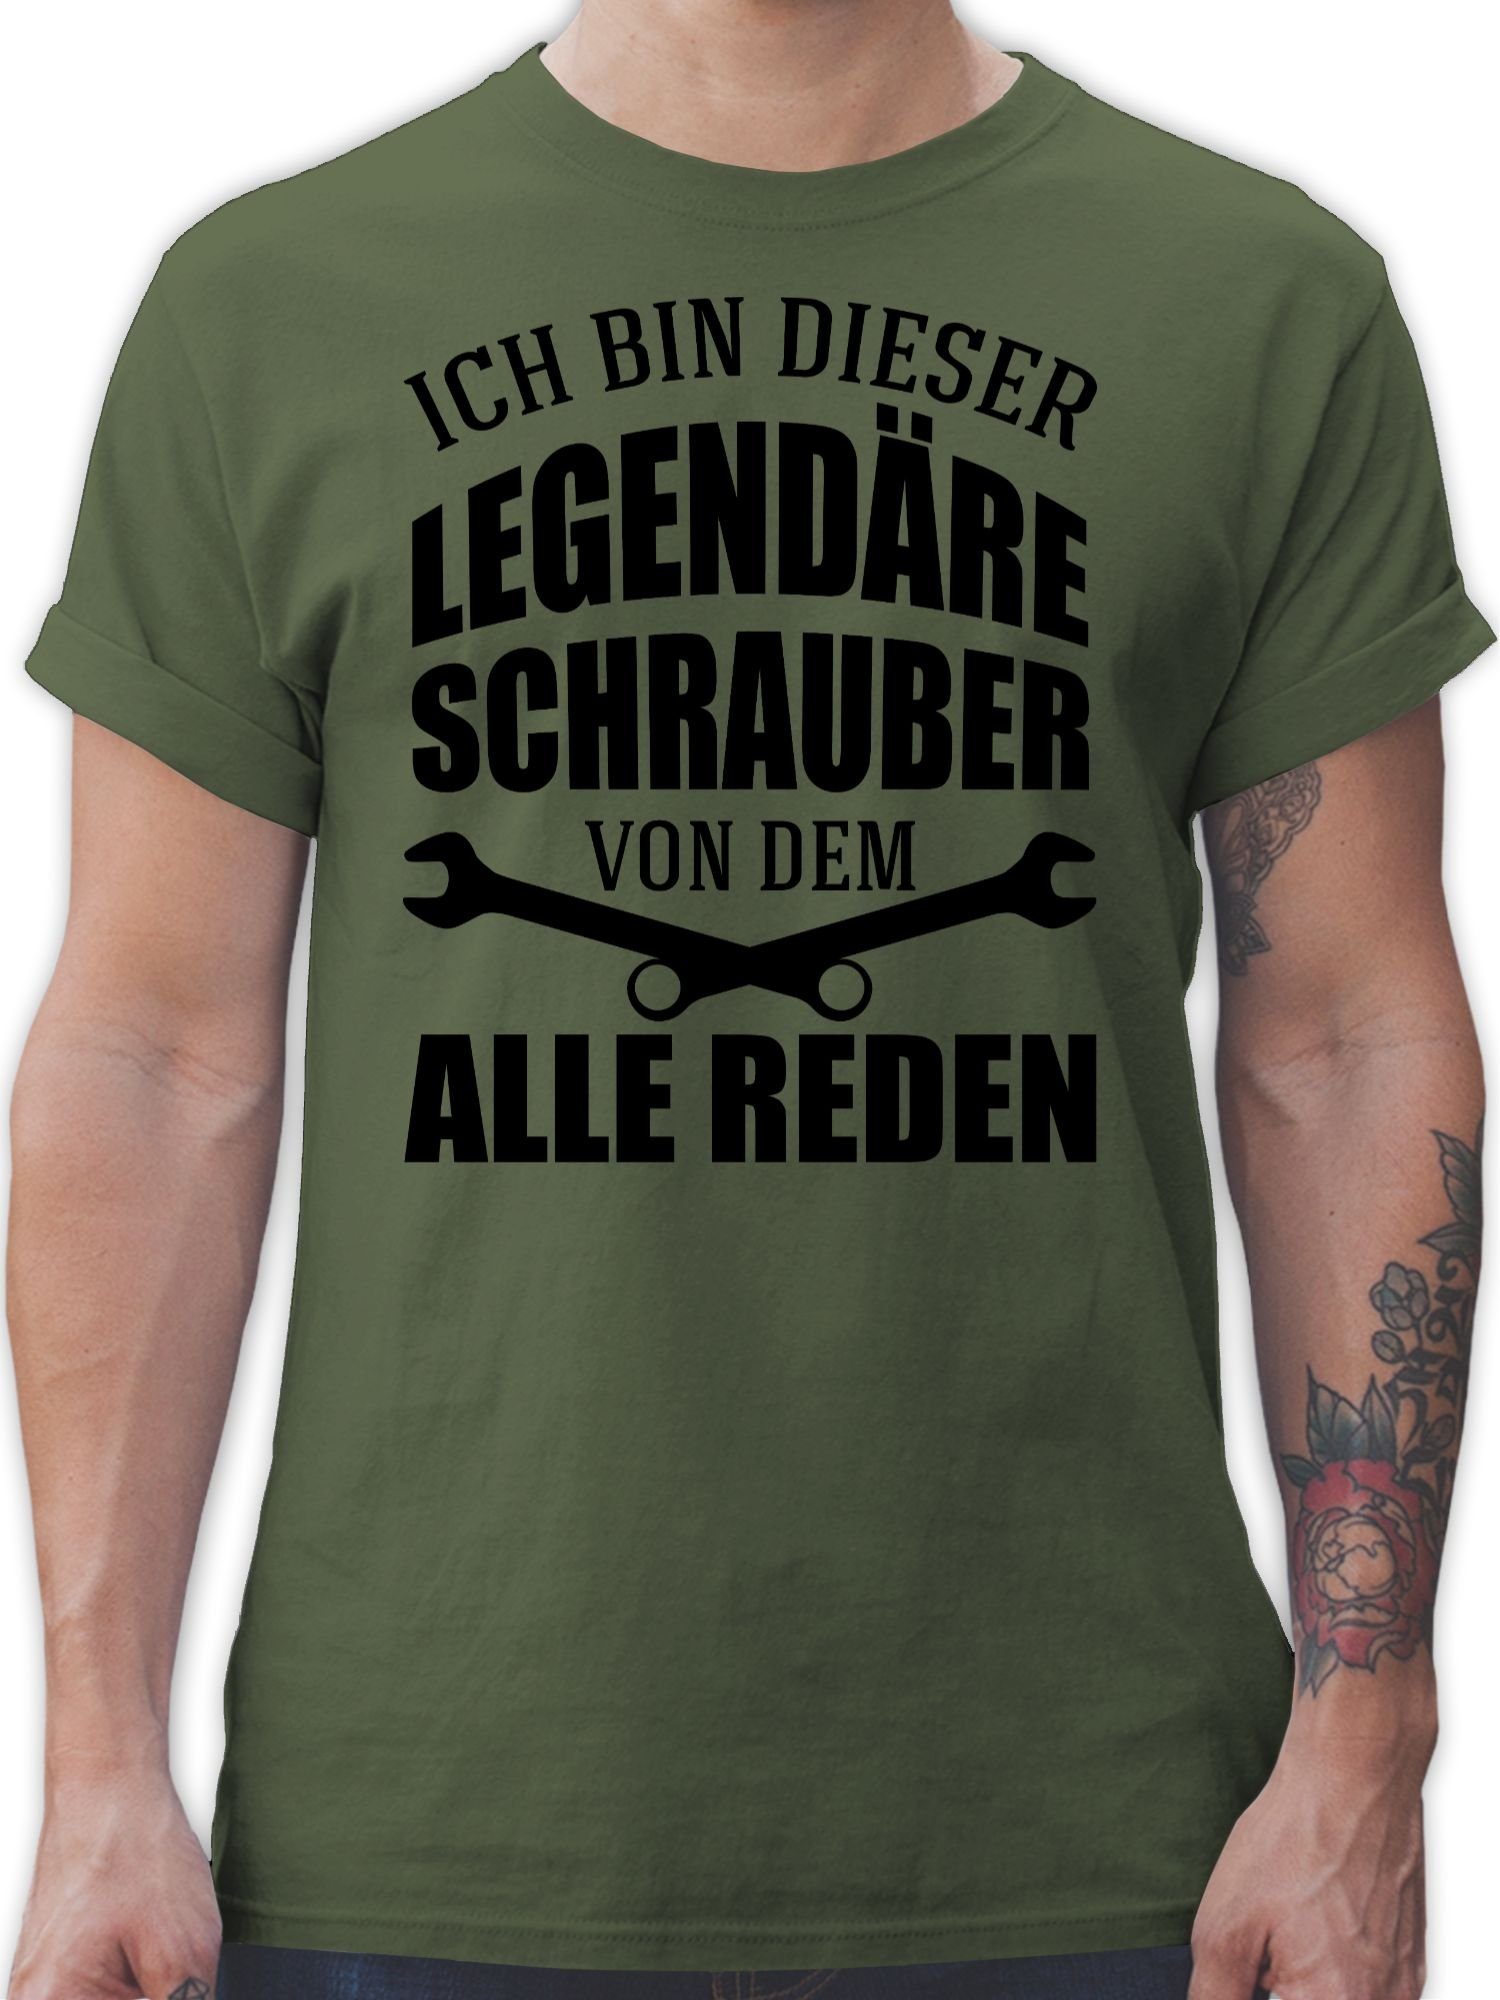 Shirtracer T-Shirt Ich bin dieser reden Handwerker legendäre 2 Geschenke Schrauber dem Army von Grün alle